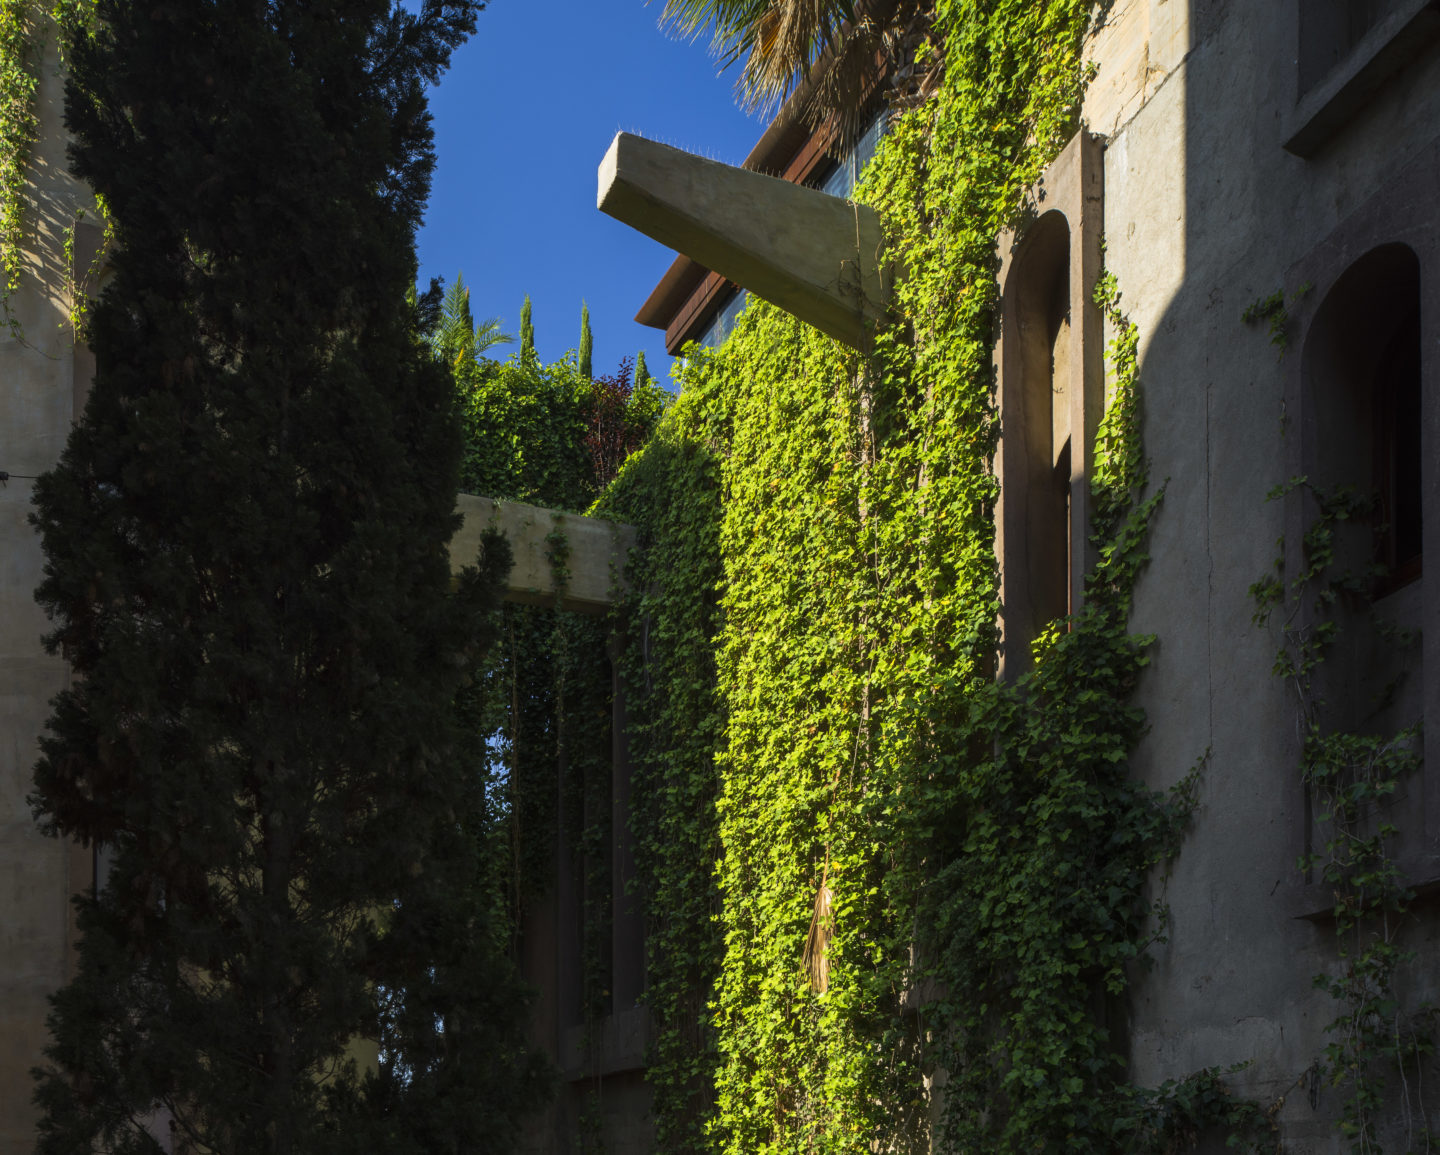 Ricardo_Bofill_Taller_de_Arquitectura_Barcelona_Spain_The_Gardens_6-1440x1155